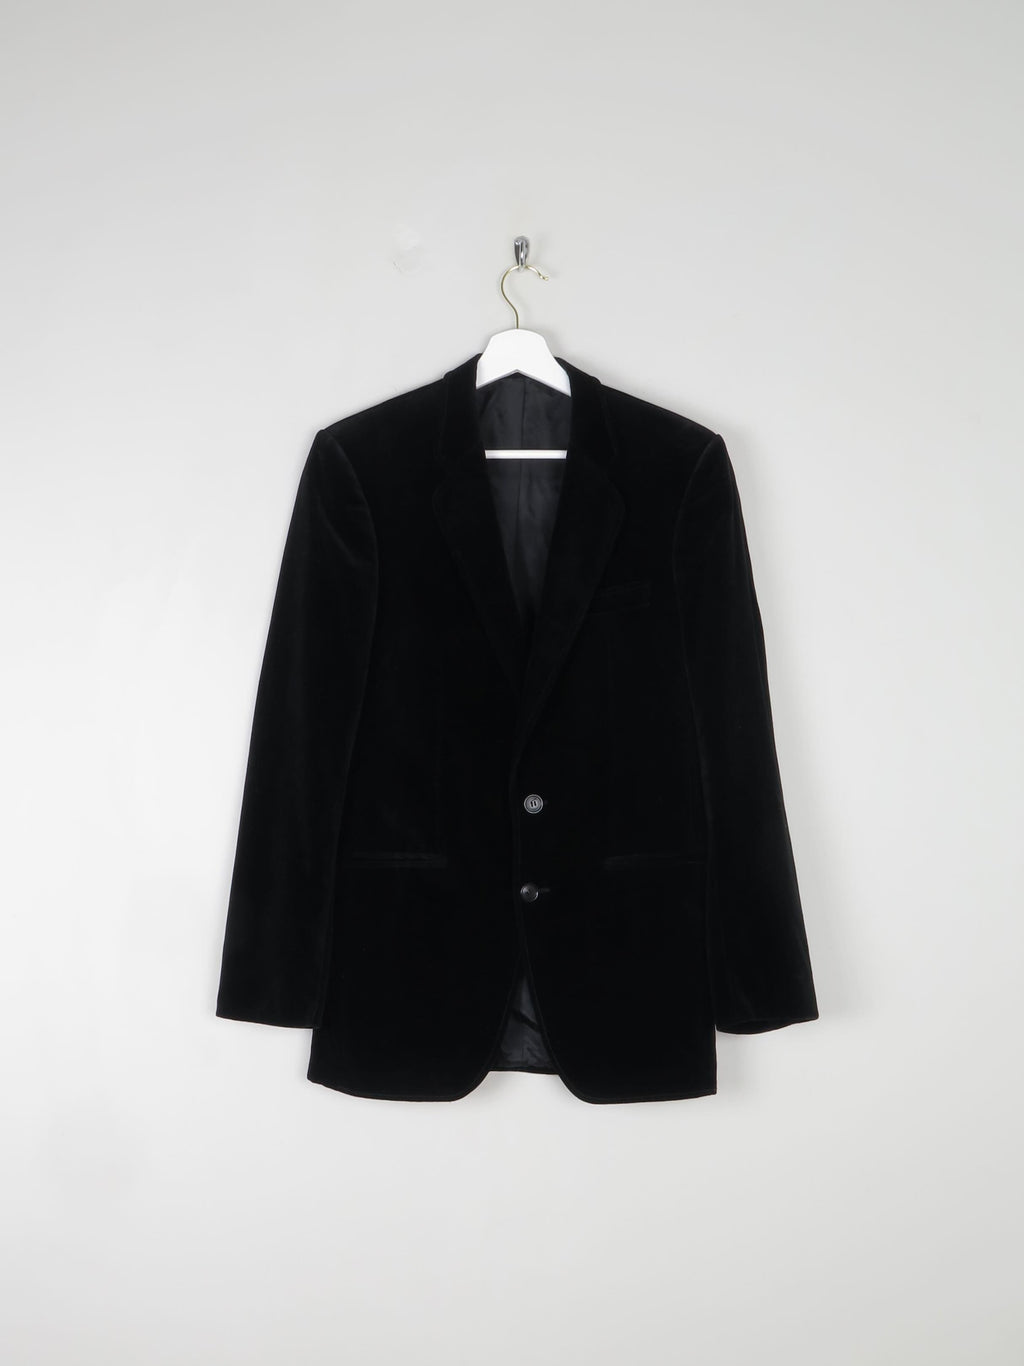 Men's Black Velvet Jacket XS/36" Chest - The Harlequin